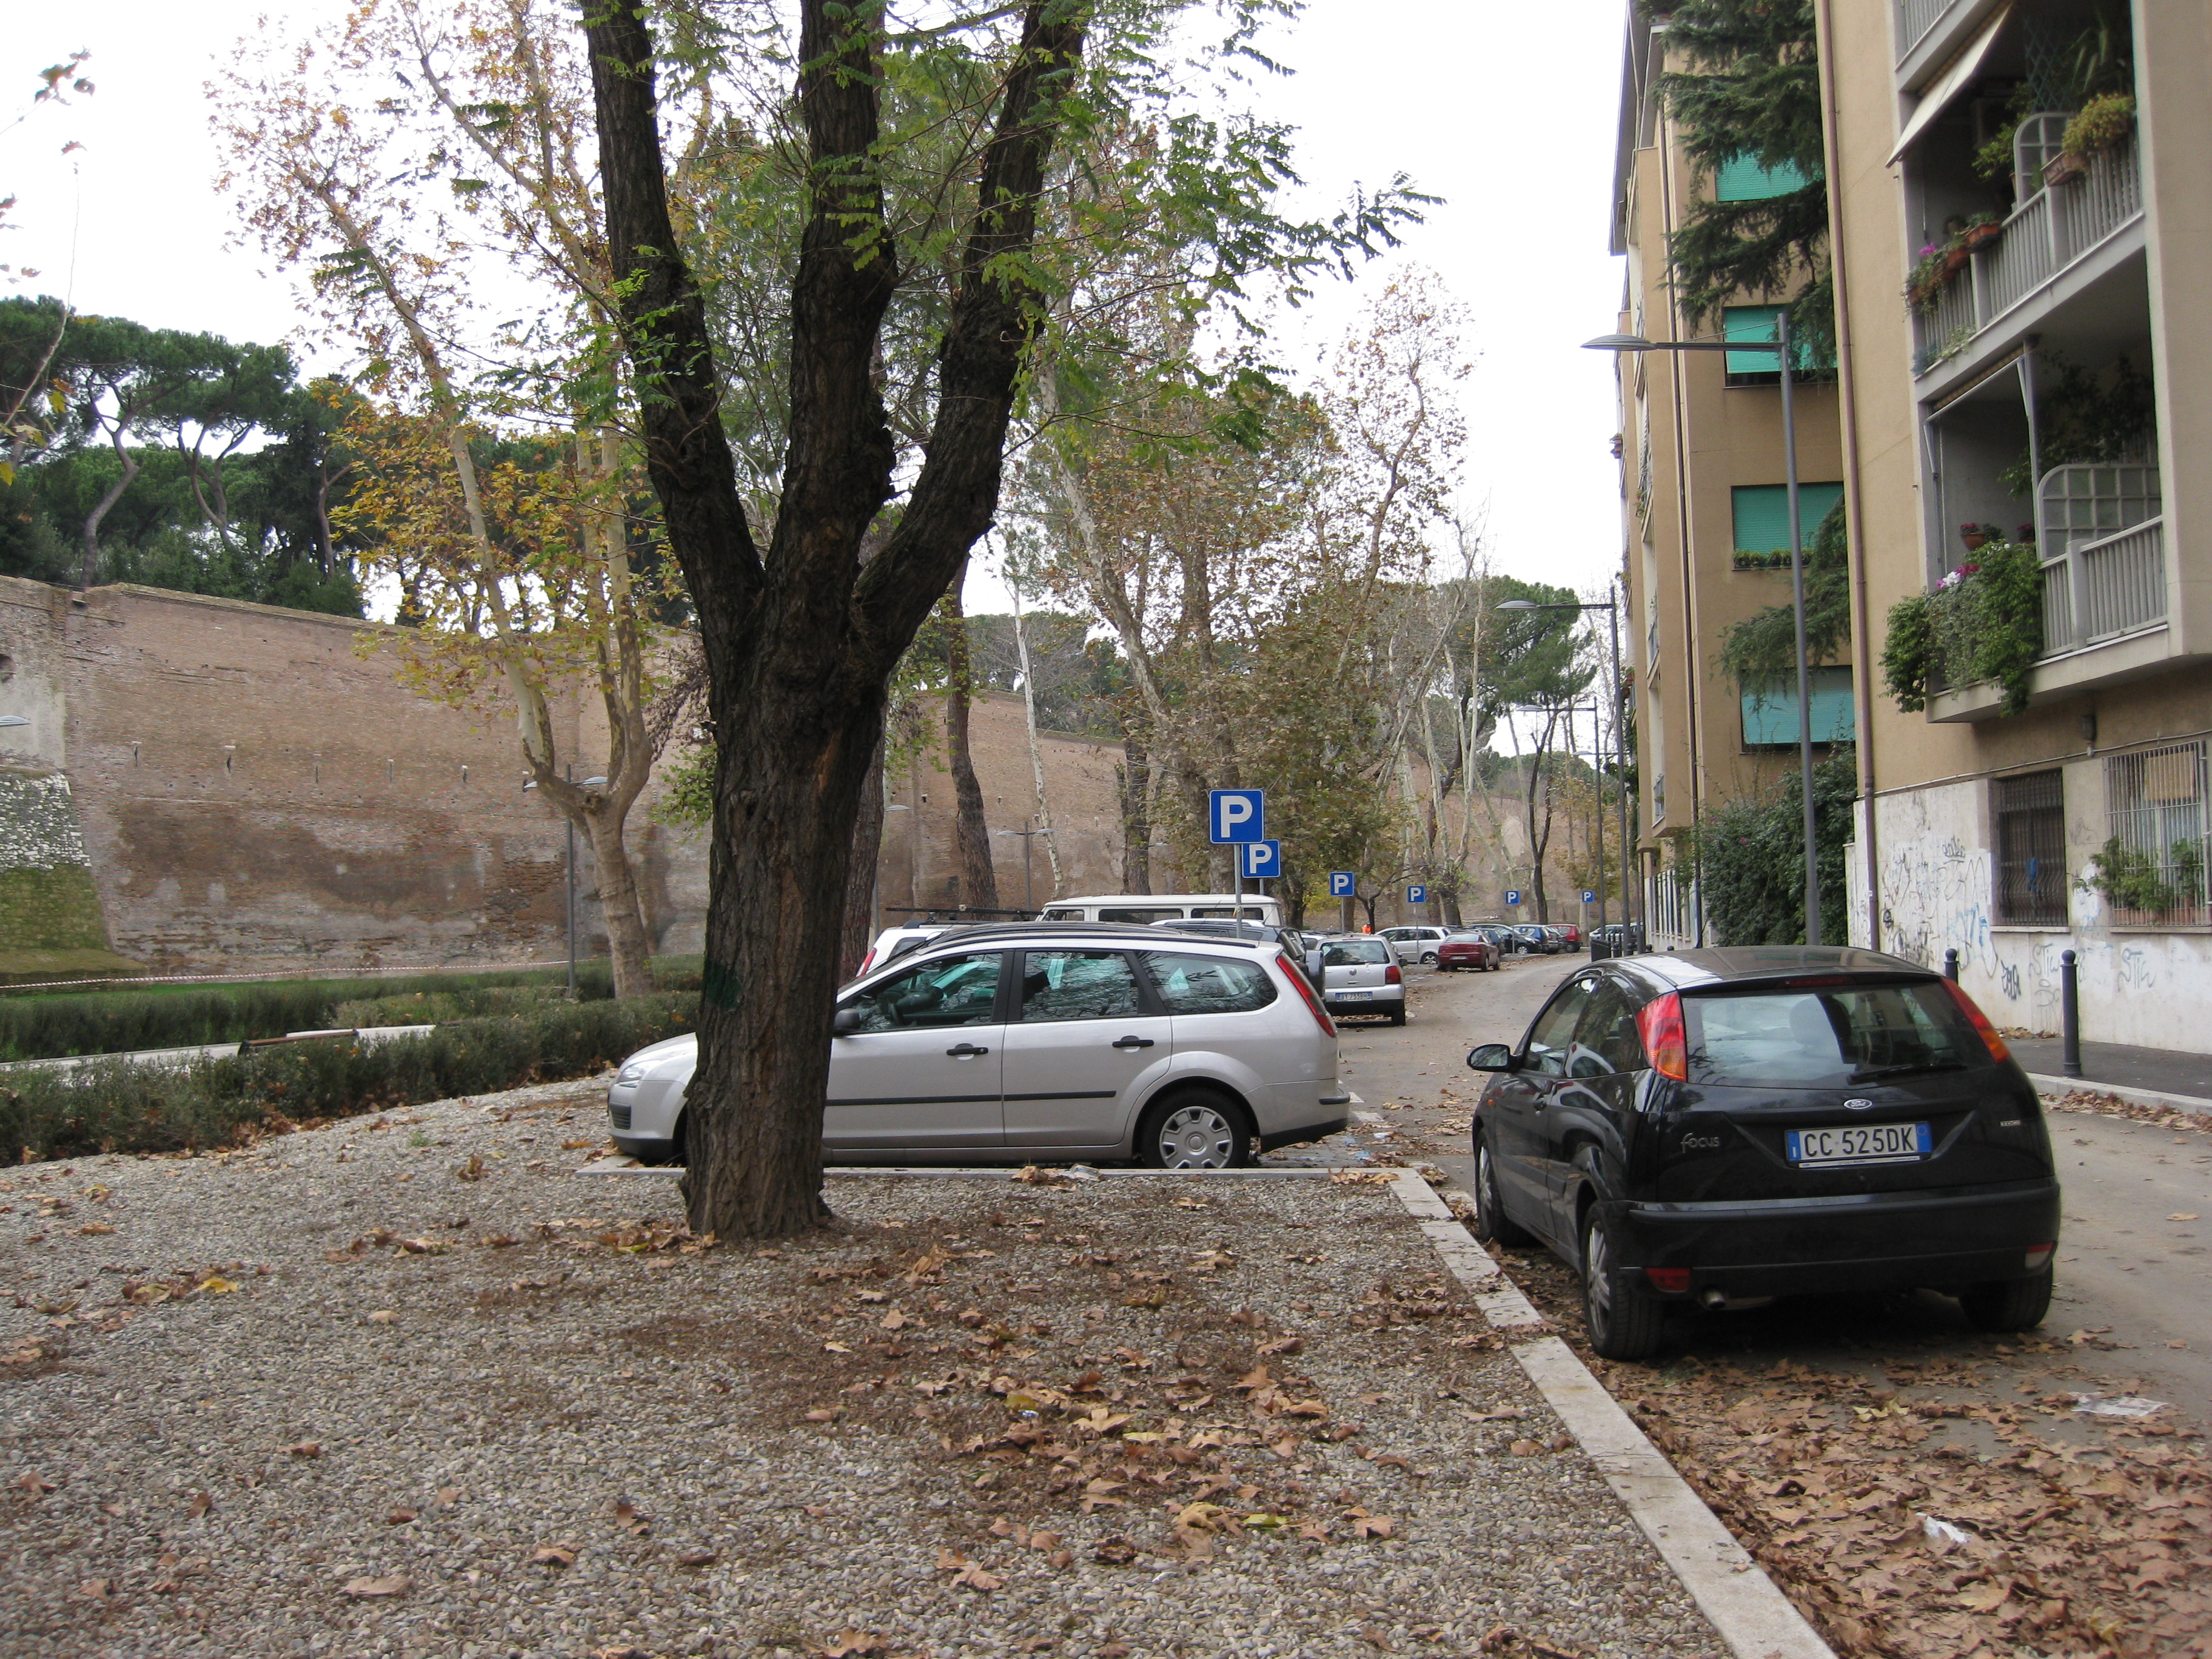 Il nuovo parco di Porta Metronia e le Mura Aureliane